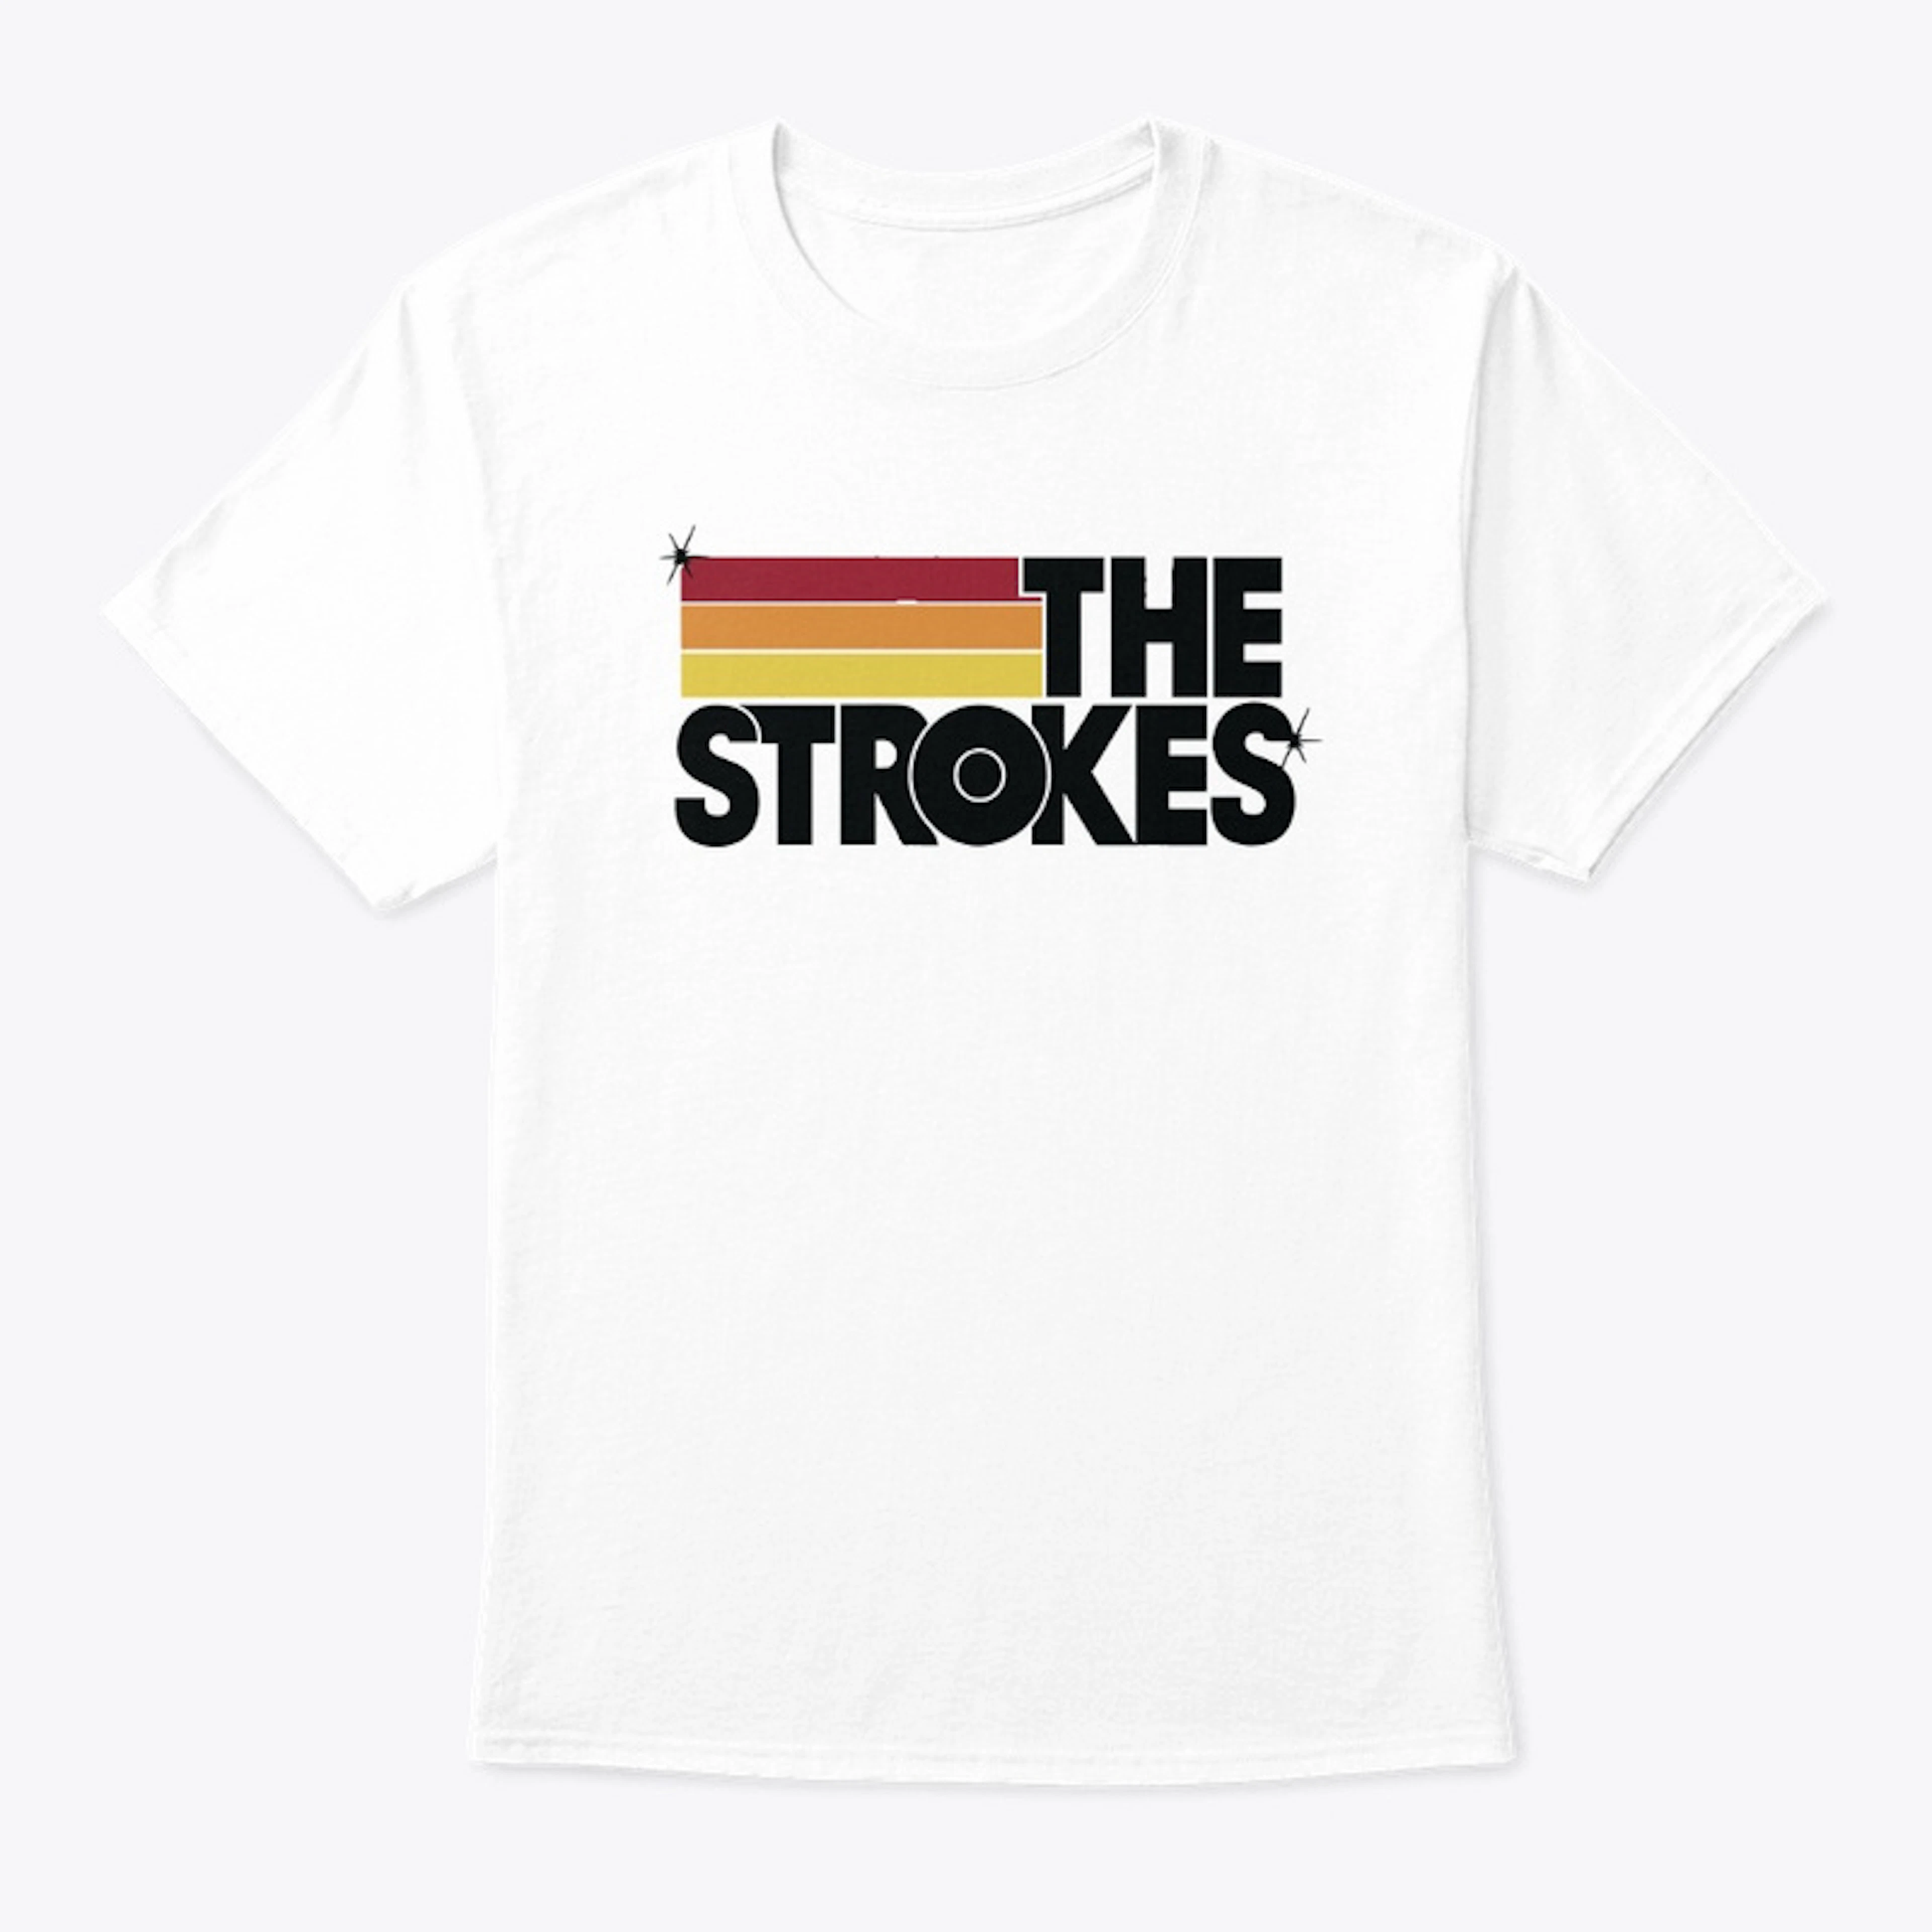 The Strokes Merchandise